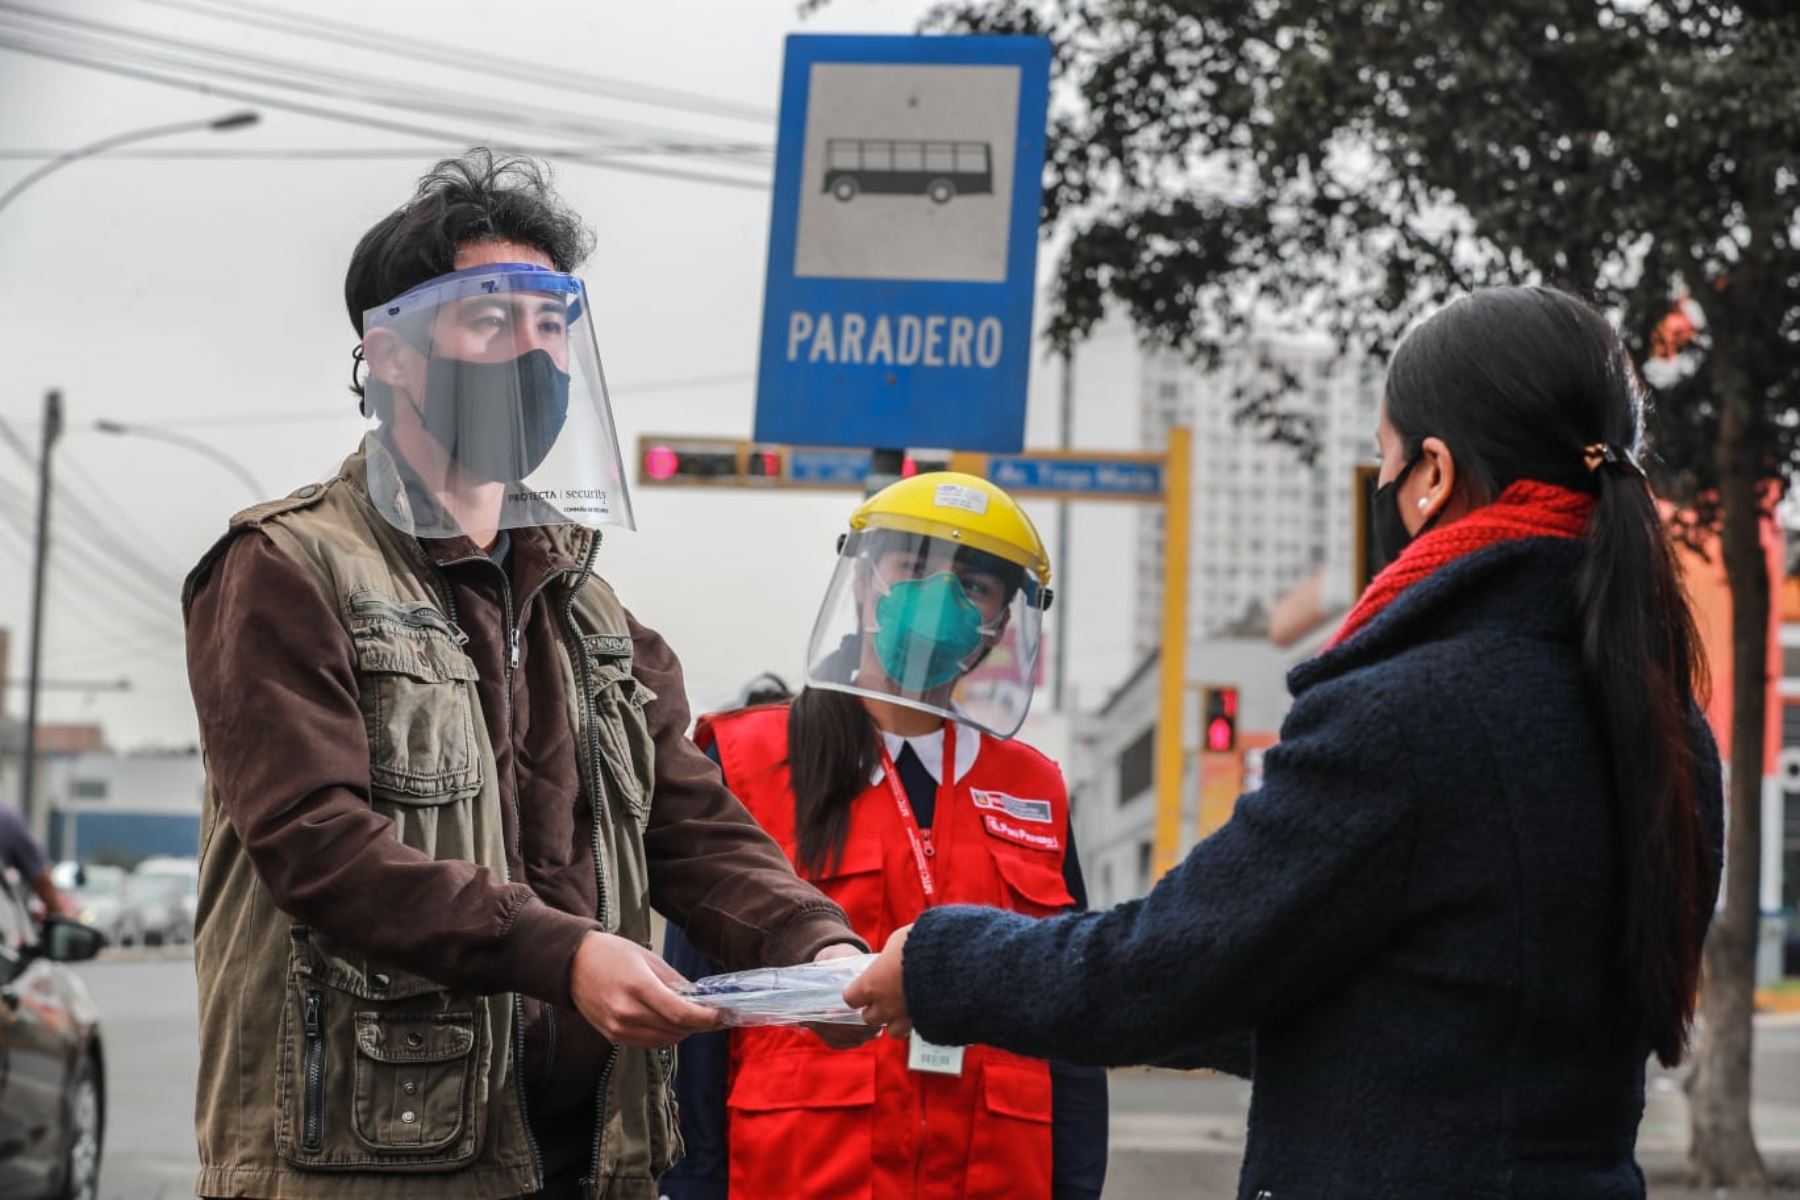 El MTC entregará en Arequipa más de 800,000 protectores faciales a usuarios del transporte público de pasajeros para evitar propagación del coronanvirus.